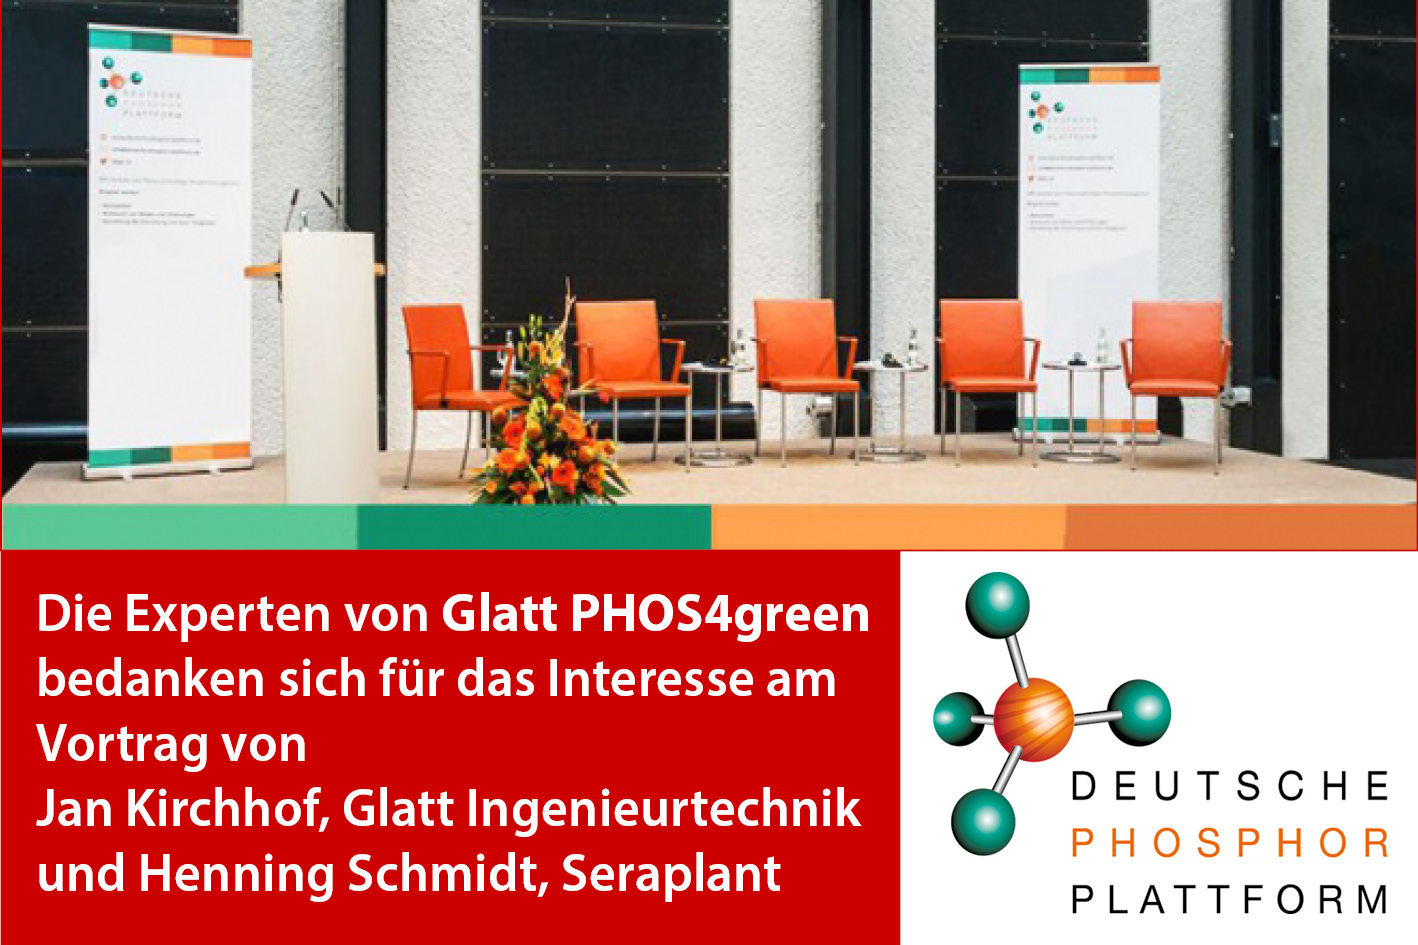 Die Experten von Glatt PHOS4green bedanken sich für das Interesse am Vortrag von Jan Kirchhof, Glatt Ingenieurtechnik und Henning Schmidt, Seraplant im Rahmen der Deutschen Phosphor Plattform 2021